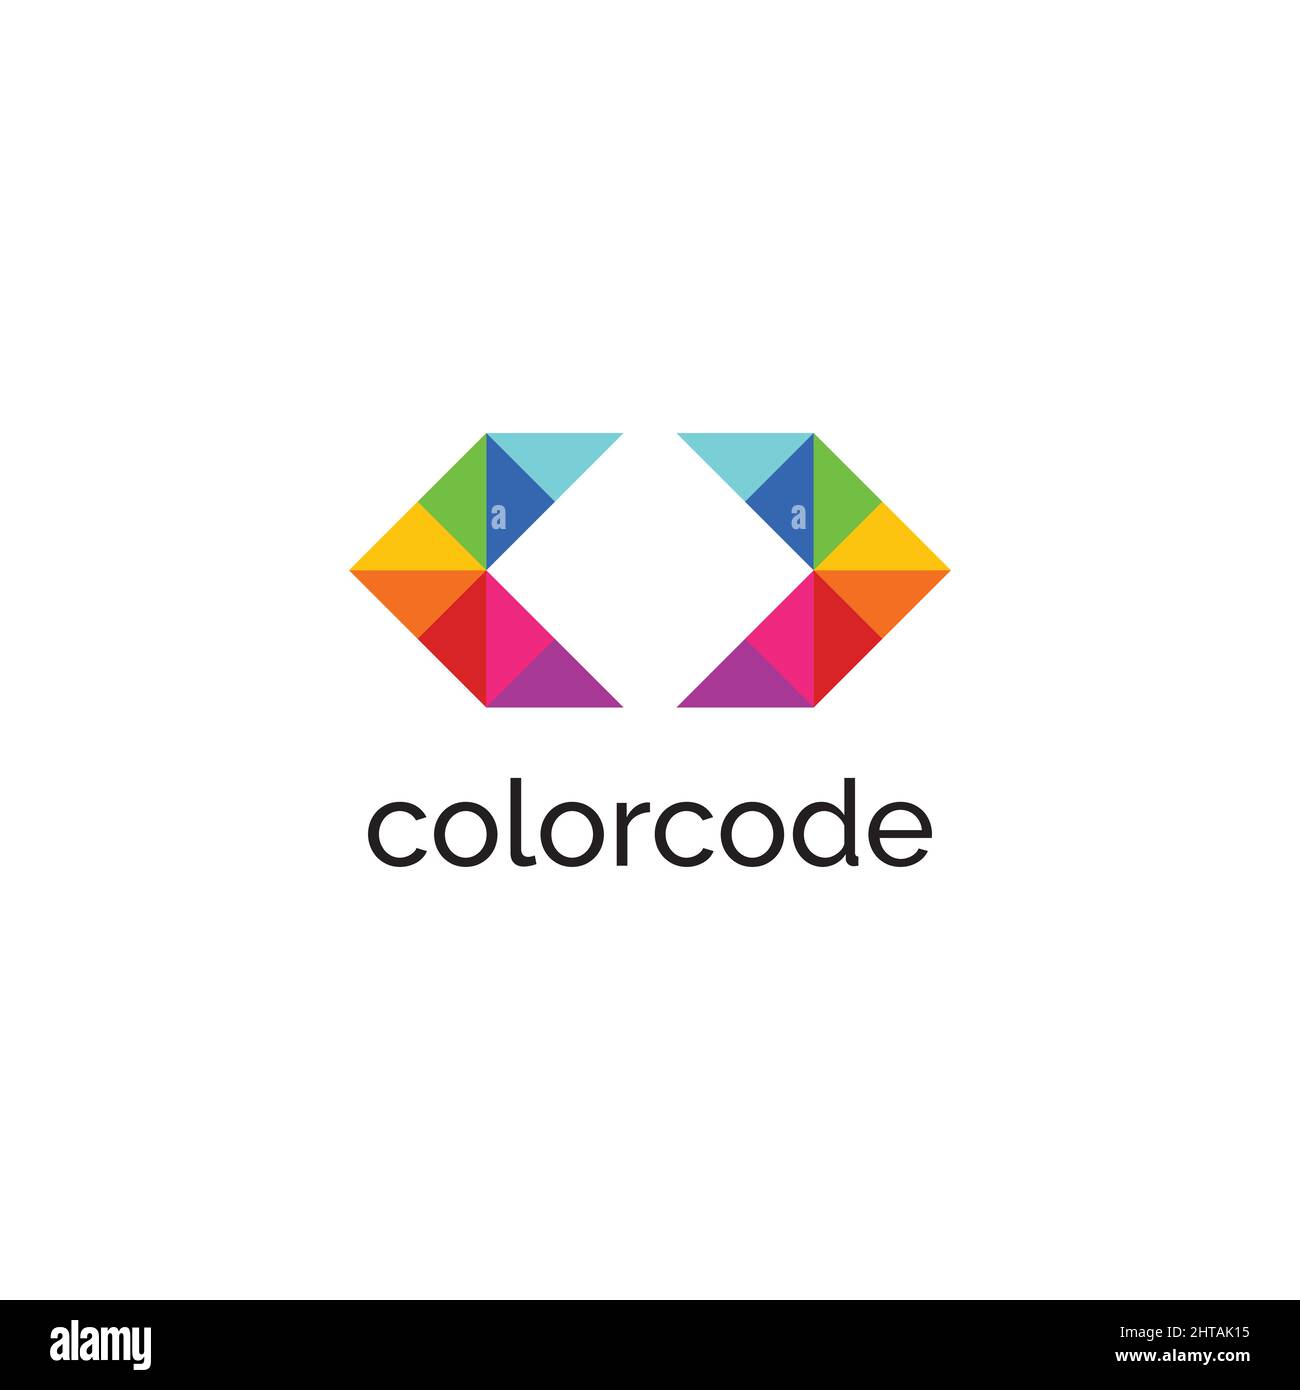 Color code logo design inspiration vector template Stock Vector